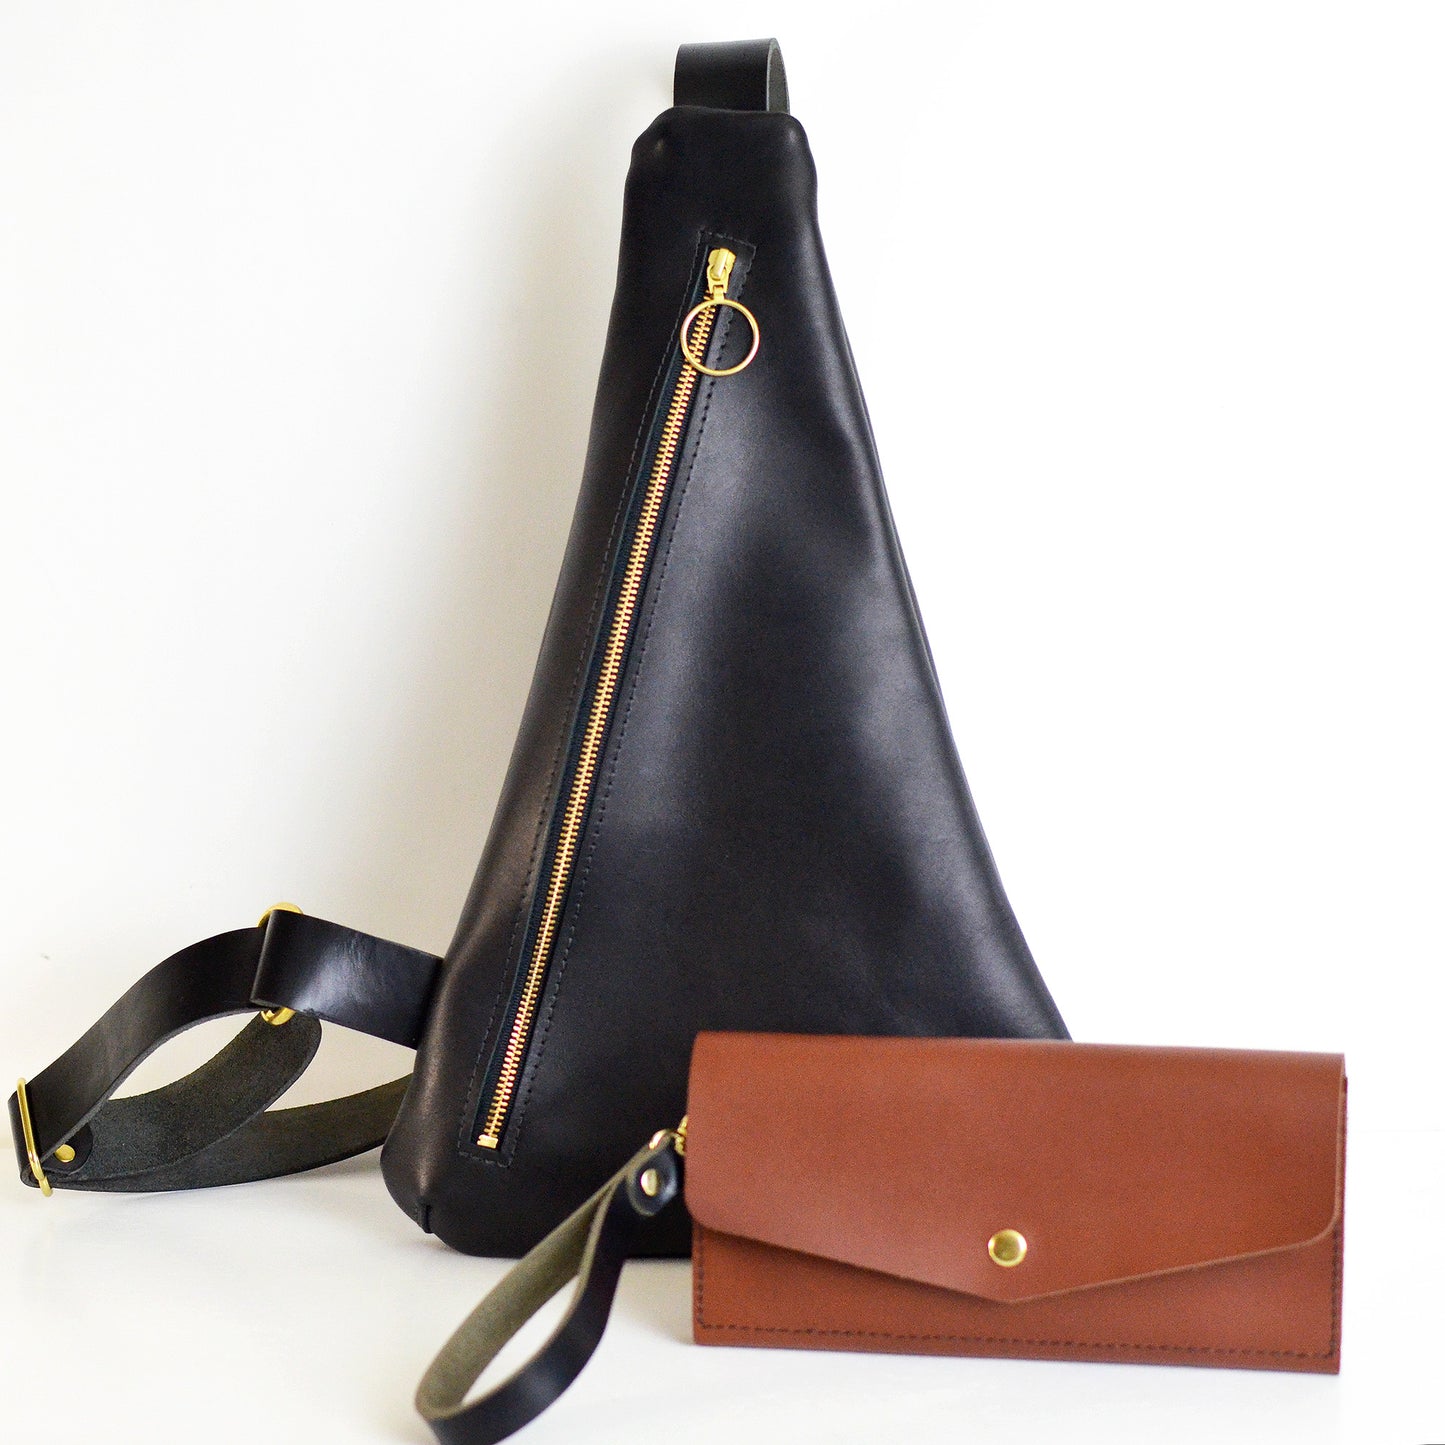 BEST-SELLING Bundle -TRIANGLE Sling Bag + Wristlet Wallet